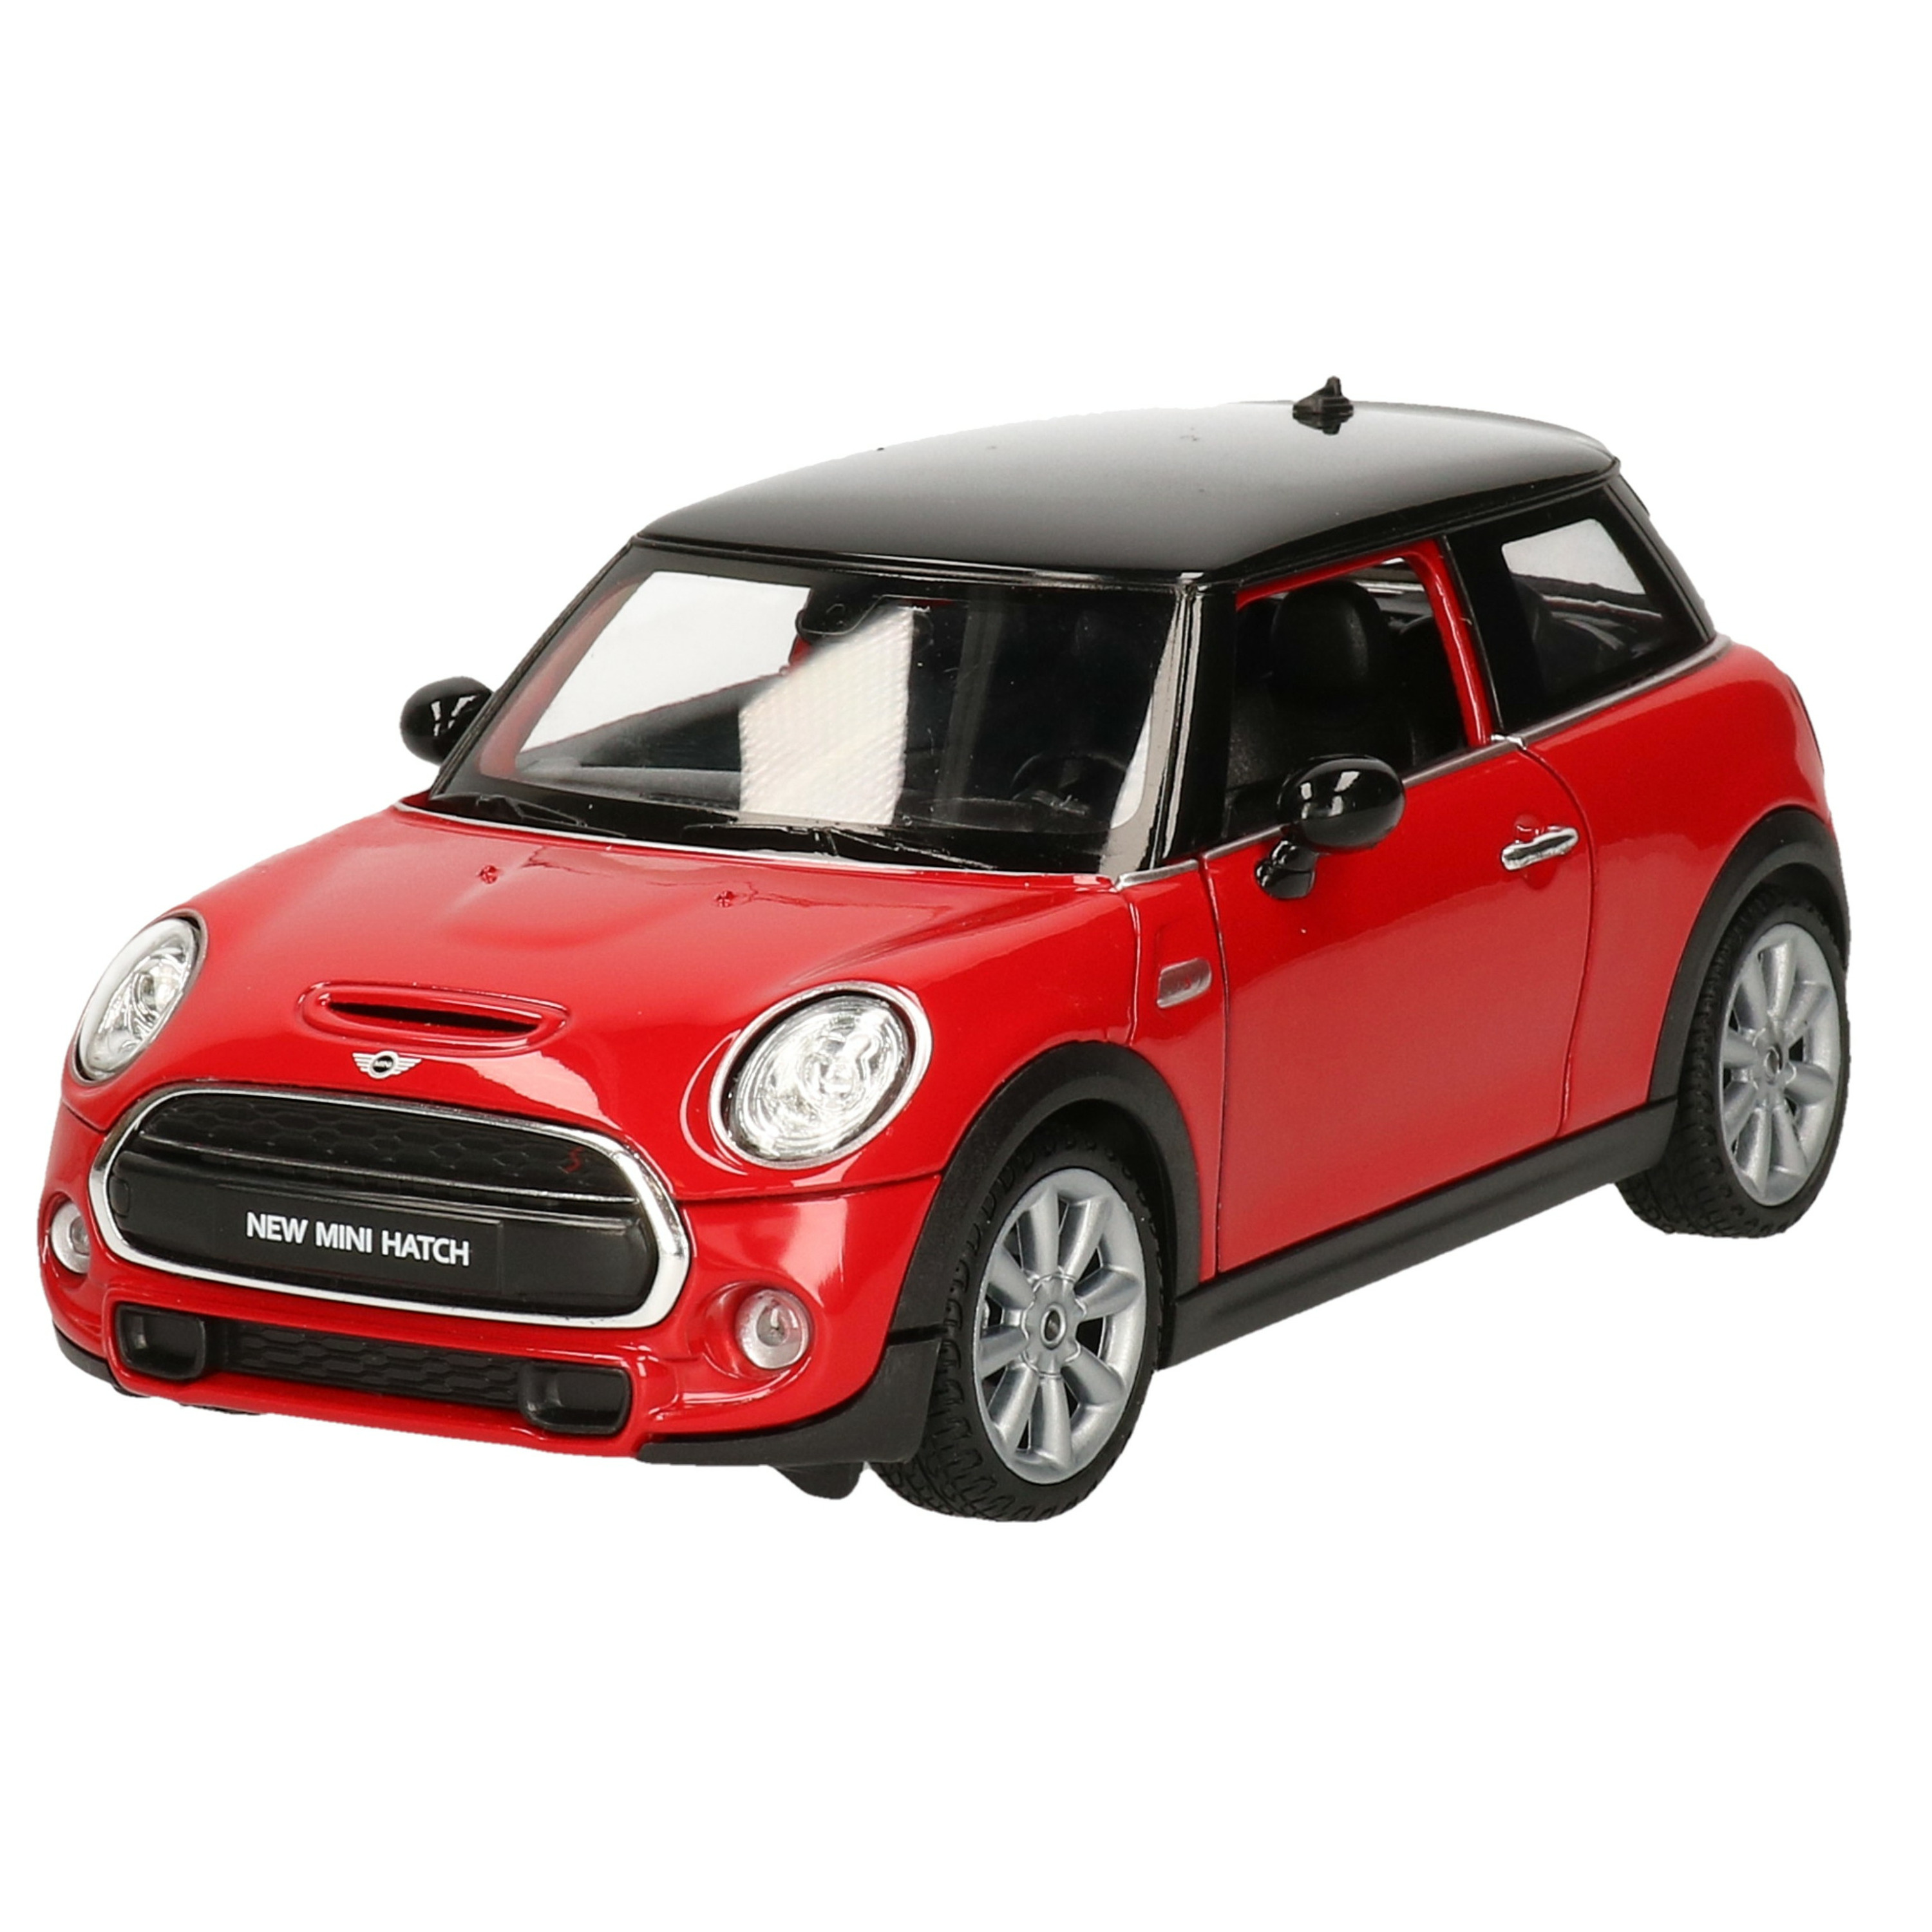 Modelauto-speelgoedauto Mini Cooper S rood schaal 1:24-16 x 7 x 6 cm